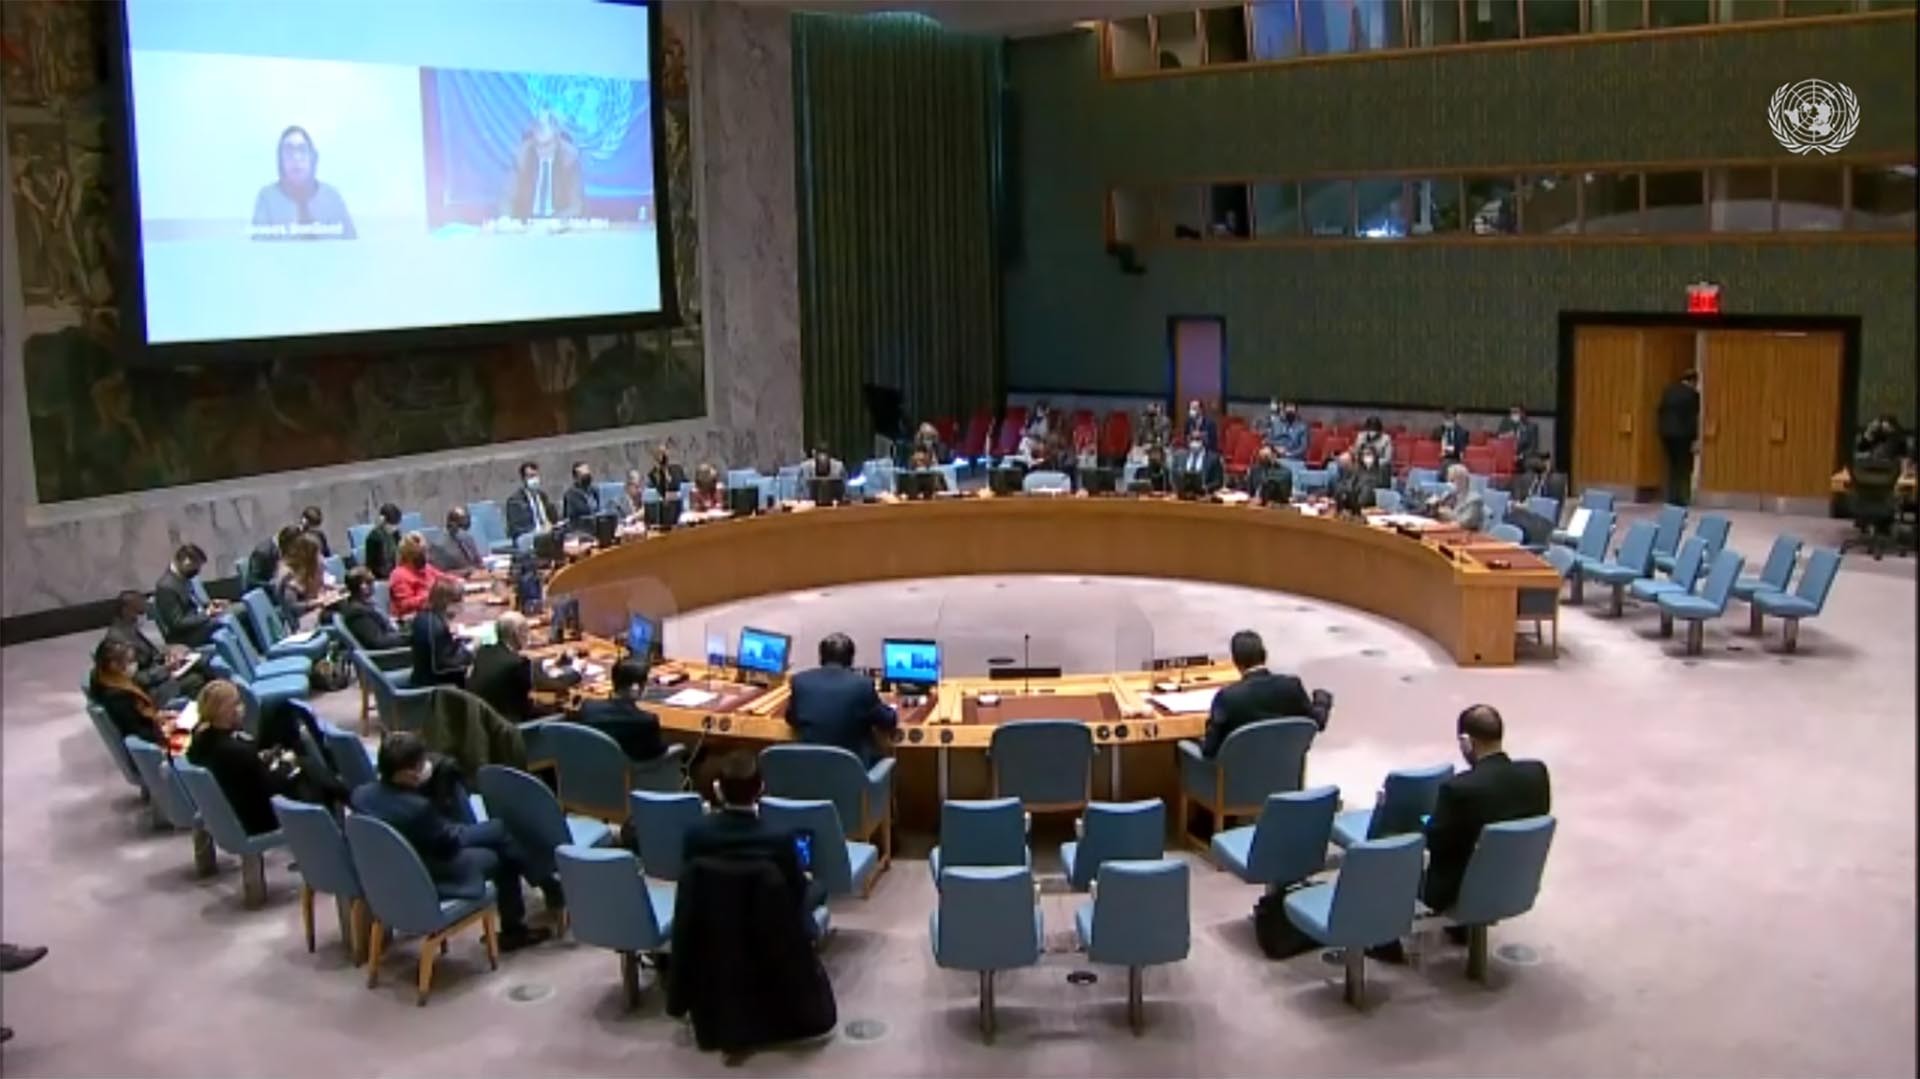 Hội đồng Bảo an họp nghe báo cáo về tình hình Libya và hoạt động của Phái bộ Hỗ trợ của LHQ tại nước này.